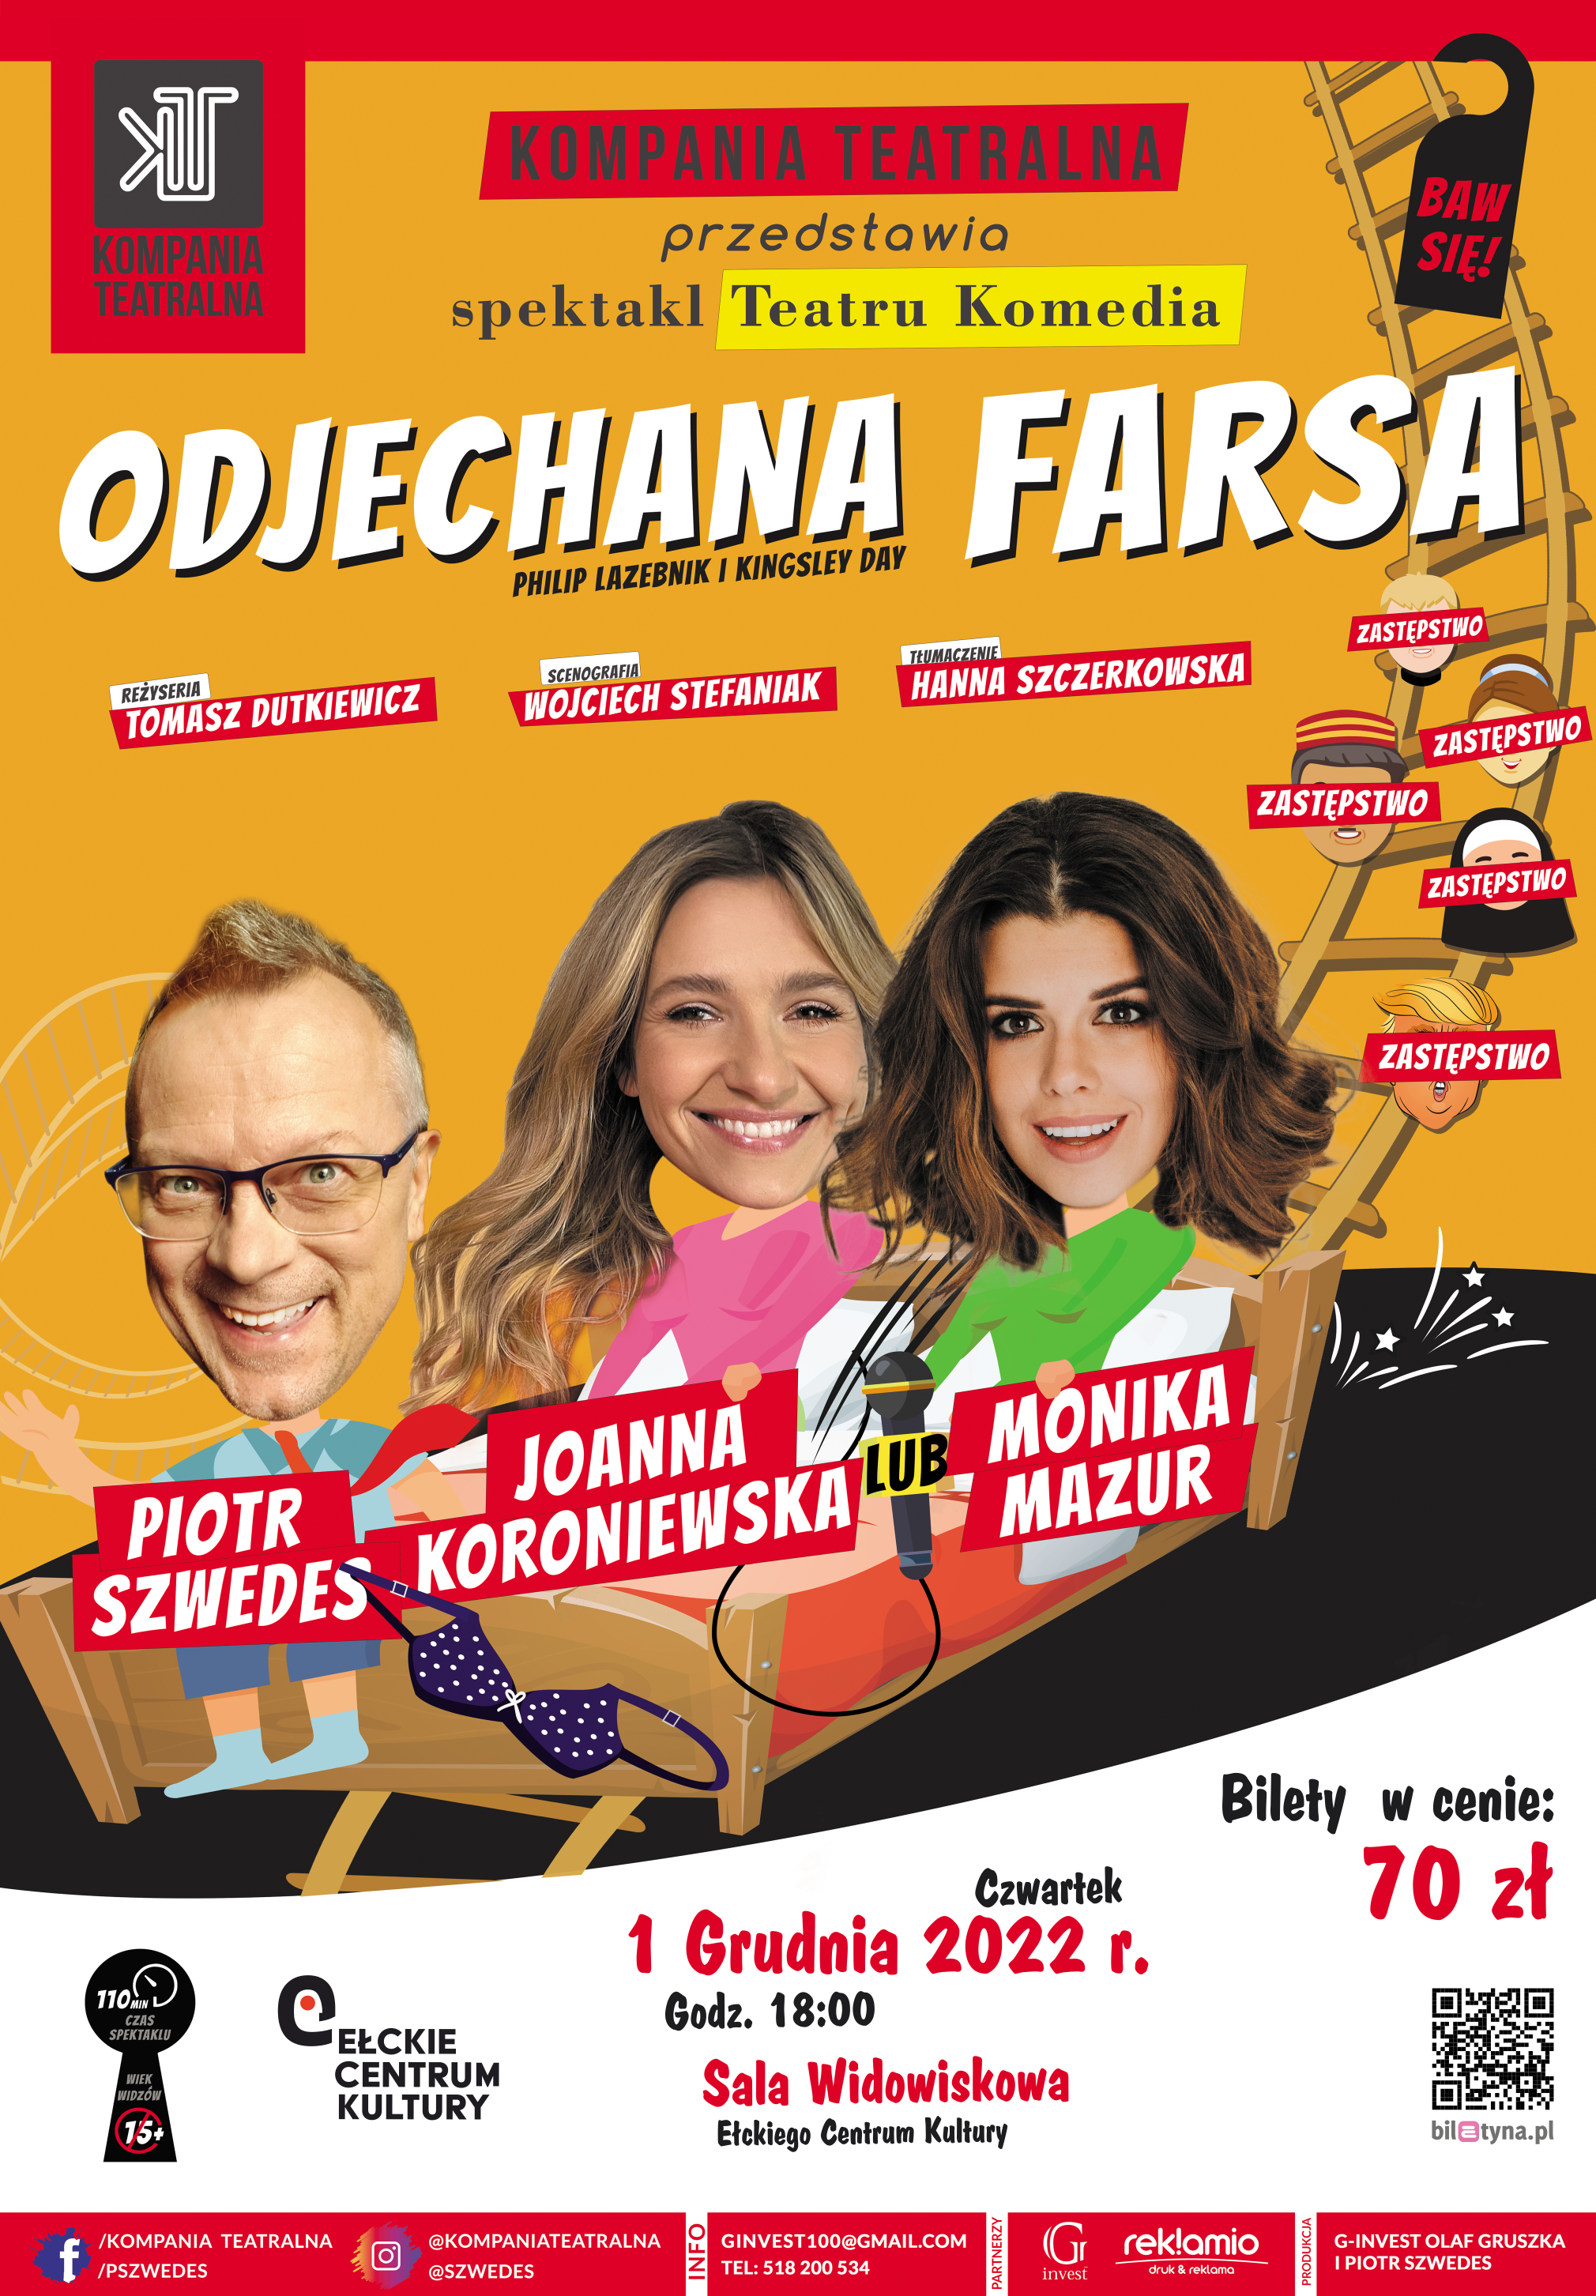 Spektakl "Odjechana farsa" | Monika Mazur i Piotr Szwedes